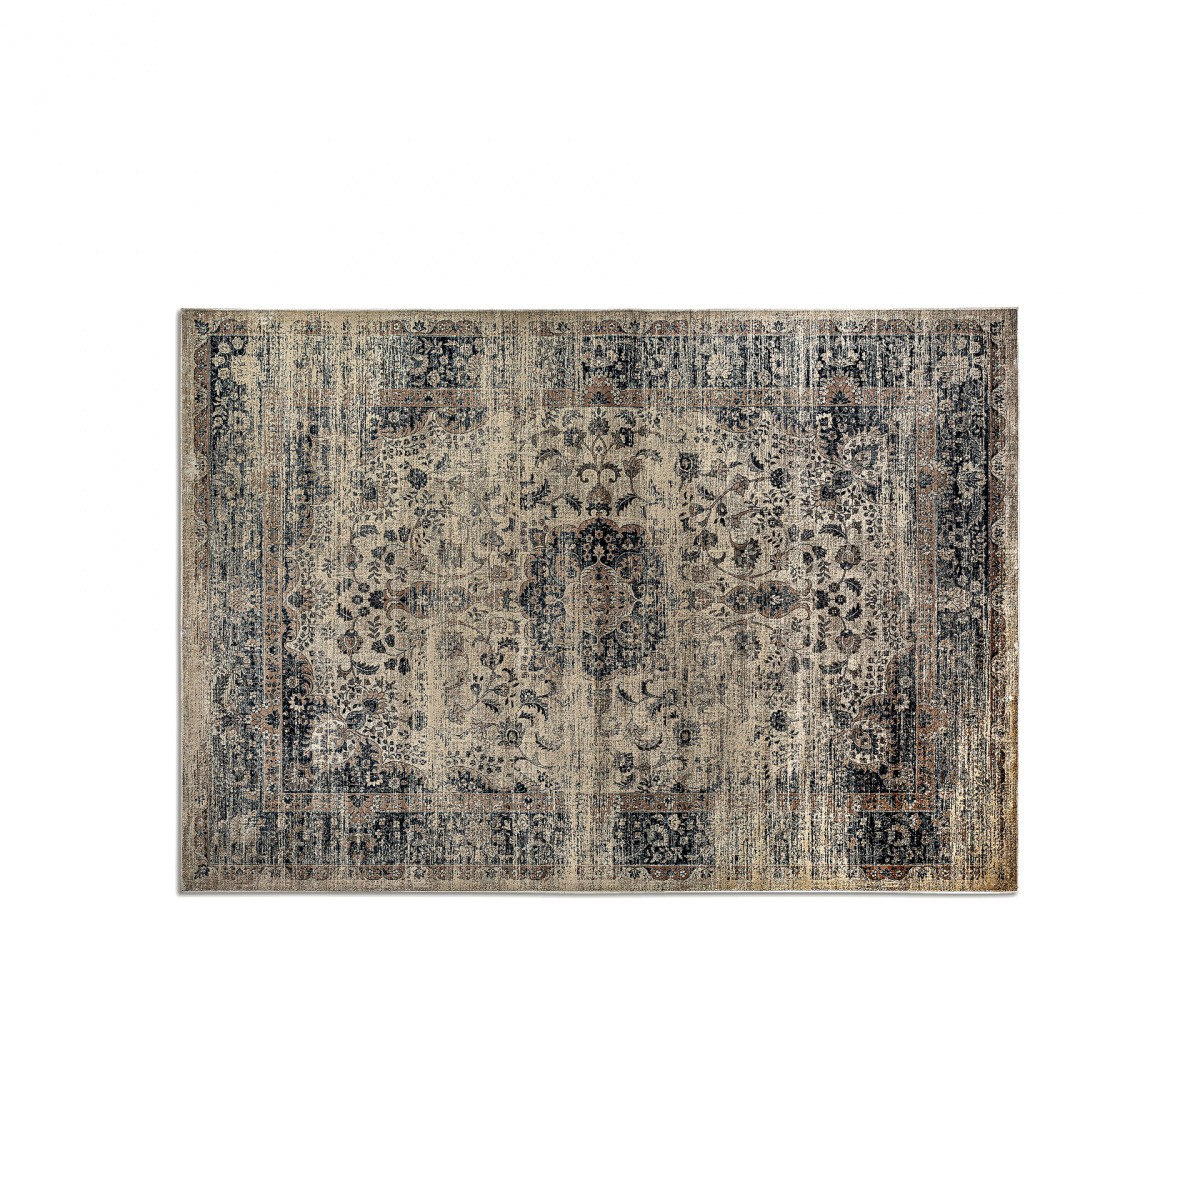 Estila Orientální obdélníkový koberec Samira z viskózy v odstínech hnědé s ornamentálním zdobením 240x340cm